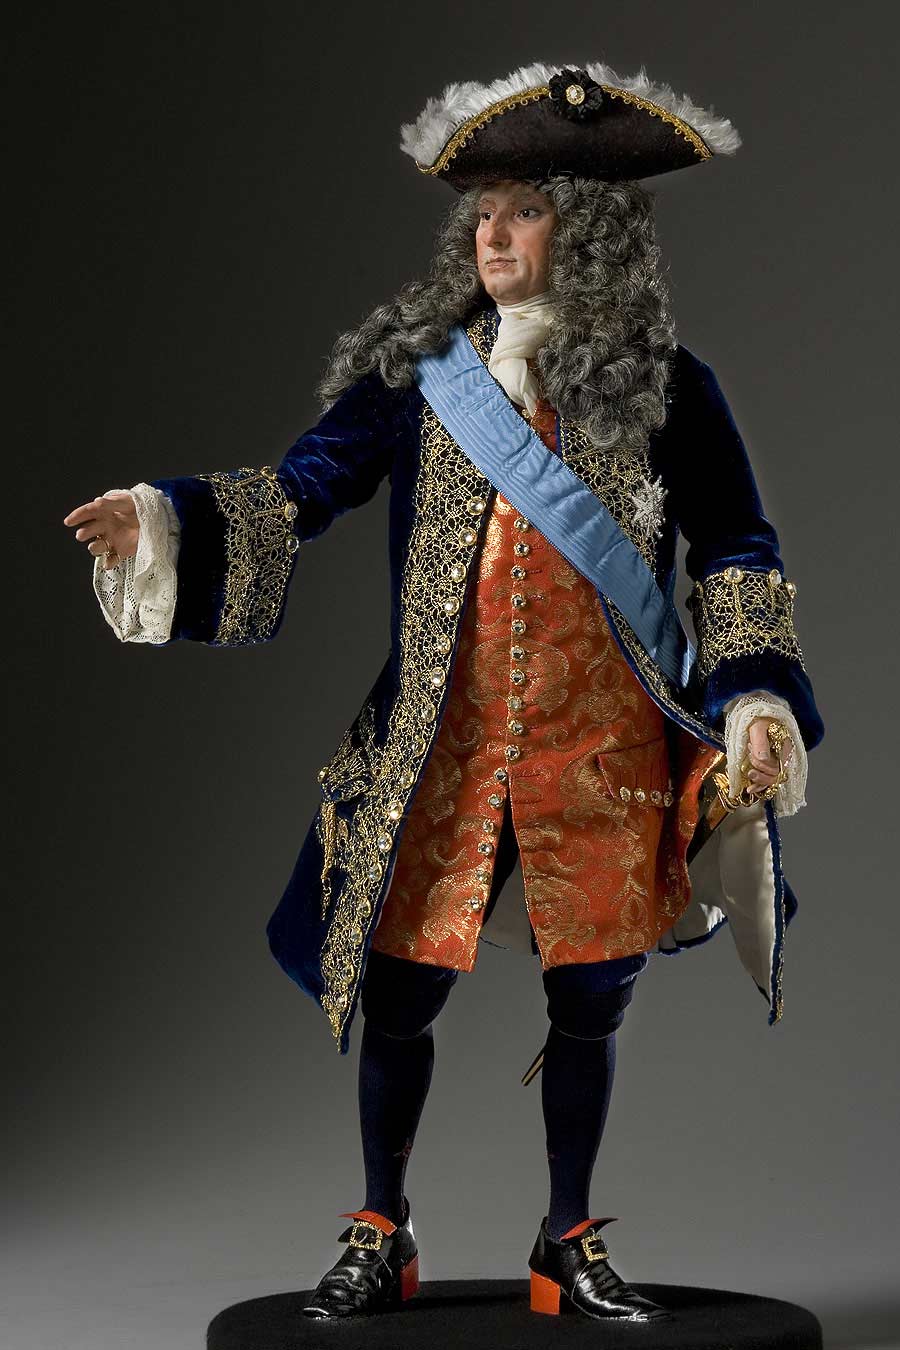 Philippe II Duke of Orleans, Regent